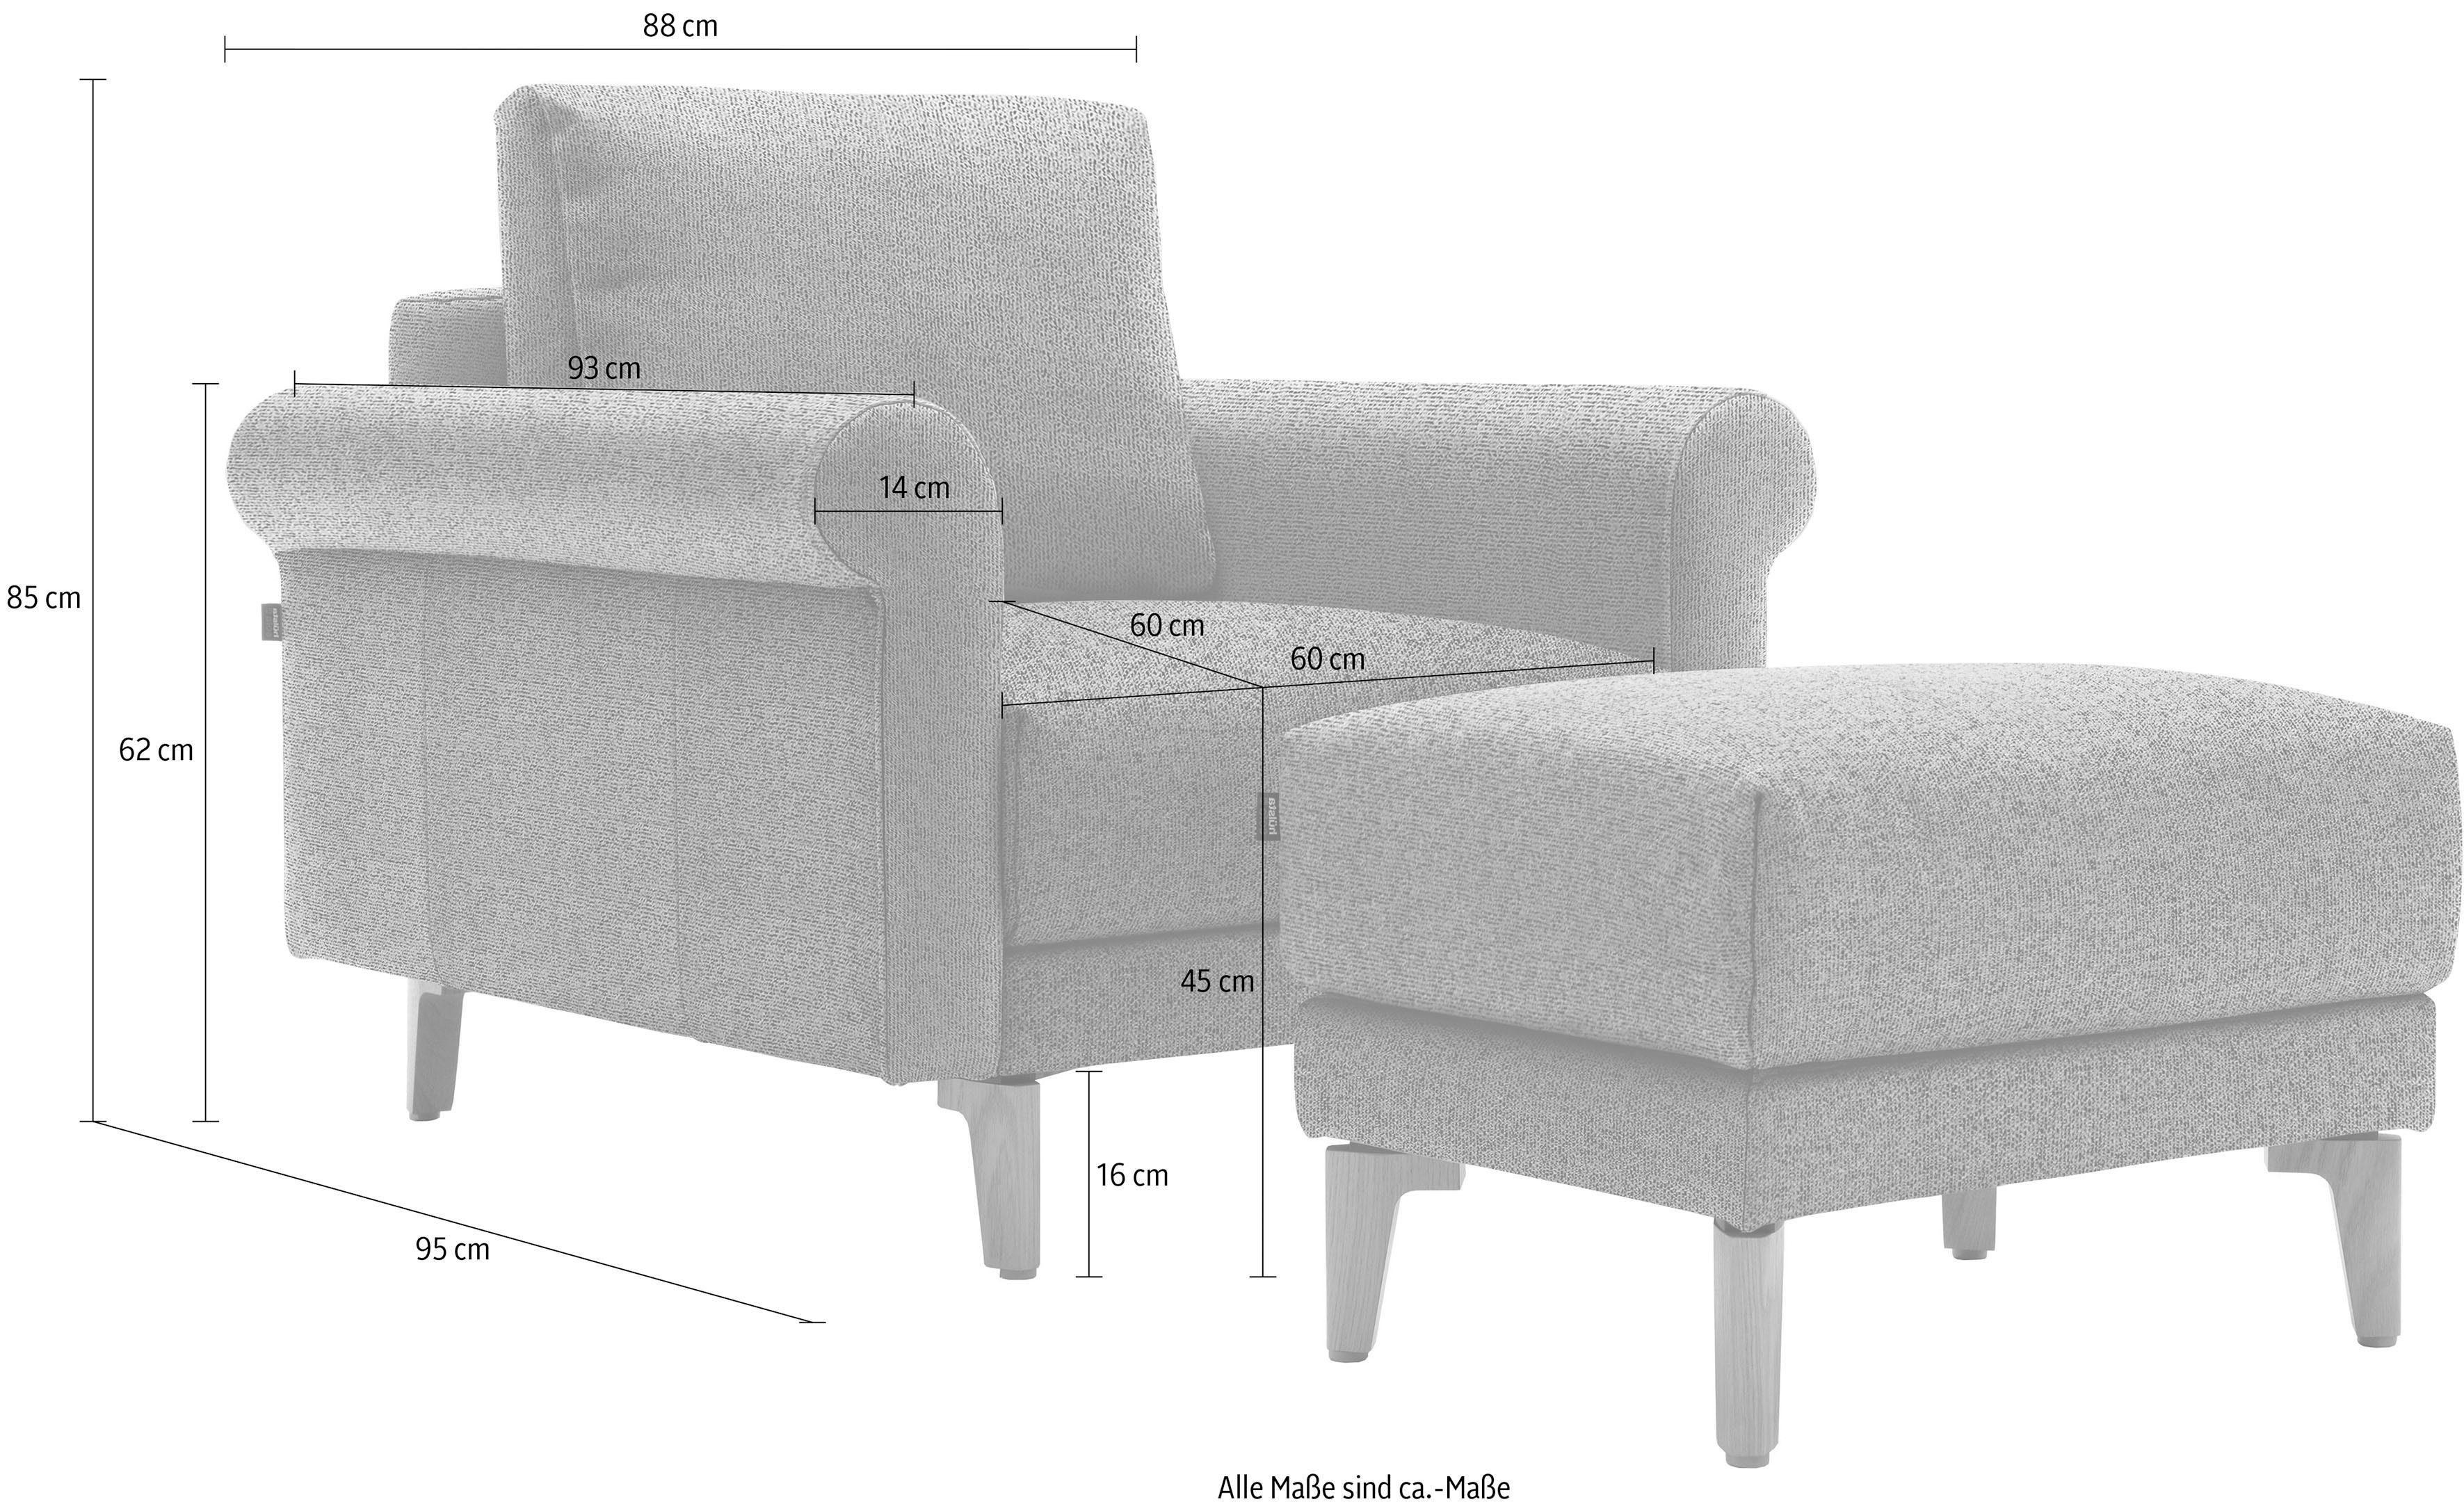 hülsta sofa Sessel hs.450, modern Landhaus, Breite 88 Fuß cm, Nussbaum